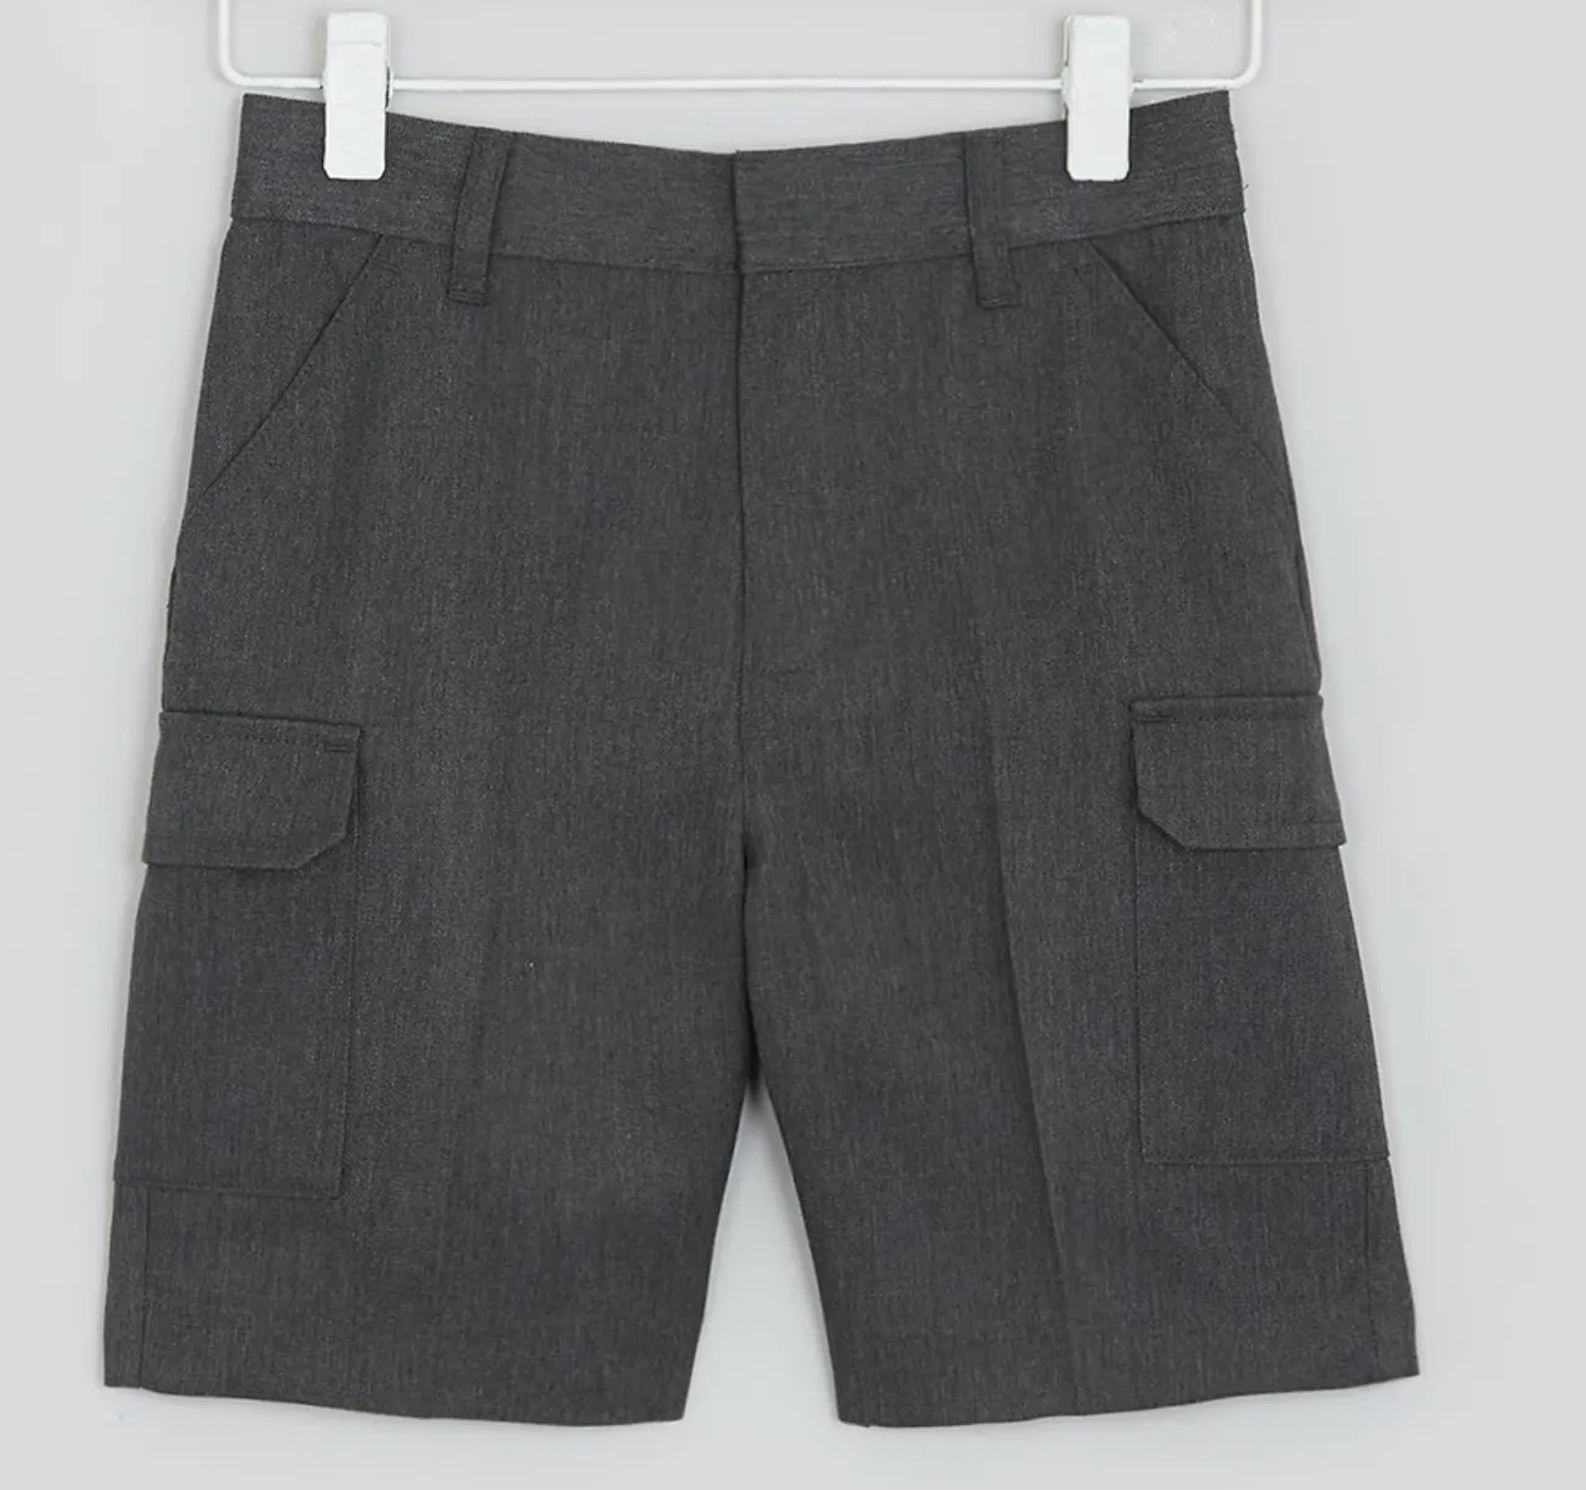 Boys' Dark Grey Cargo Shorts, Flat Front, Adjustable Waist, Four Pockets 4-5 Y